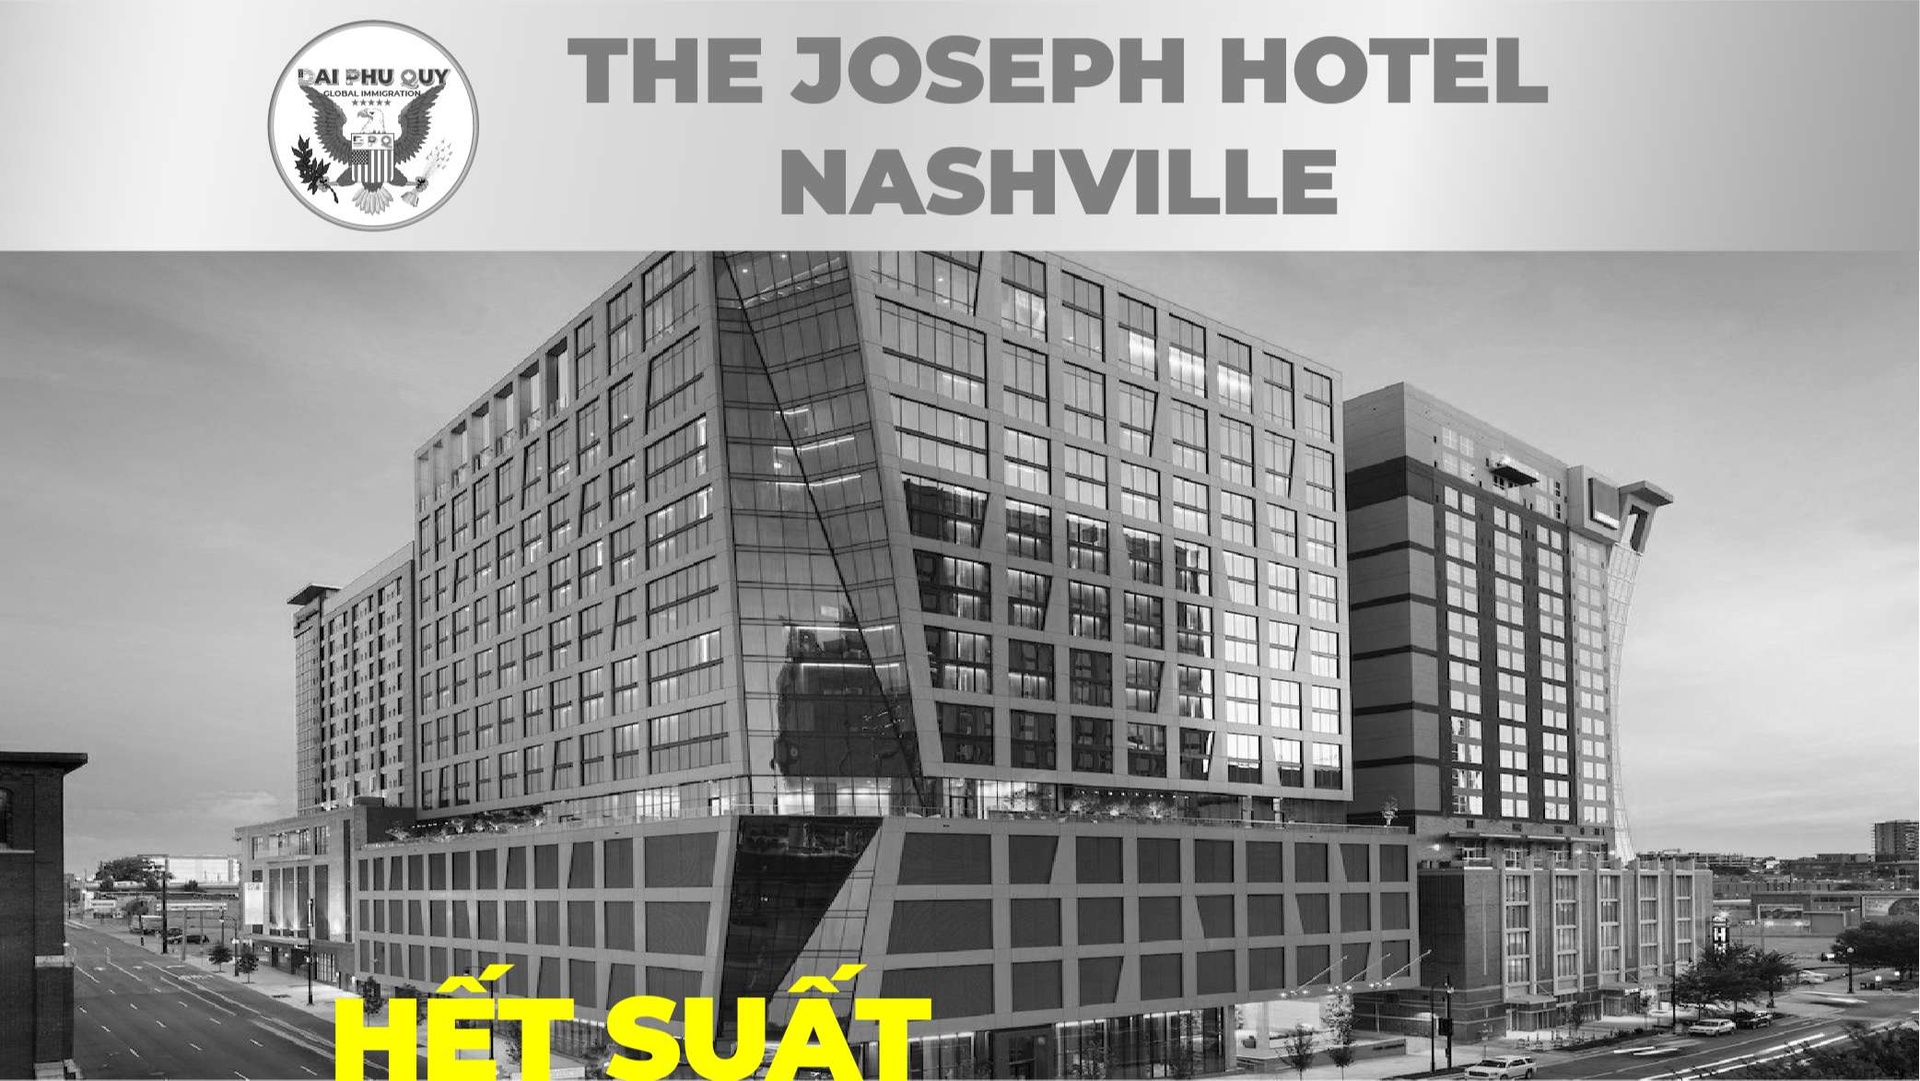 DỰ ÁN ĐẦU TƯ ĐỊNH CƯ MỸ EB5: THE JOSEPH HOTEL